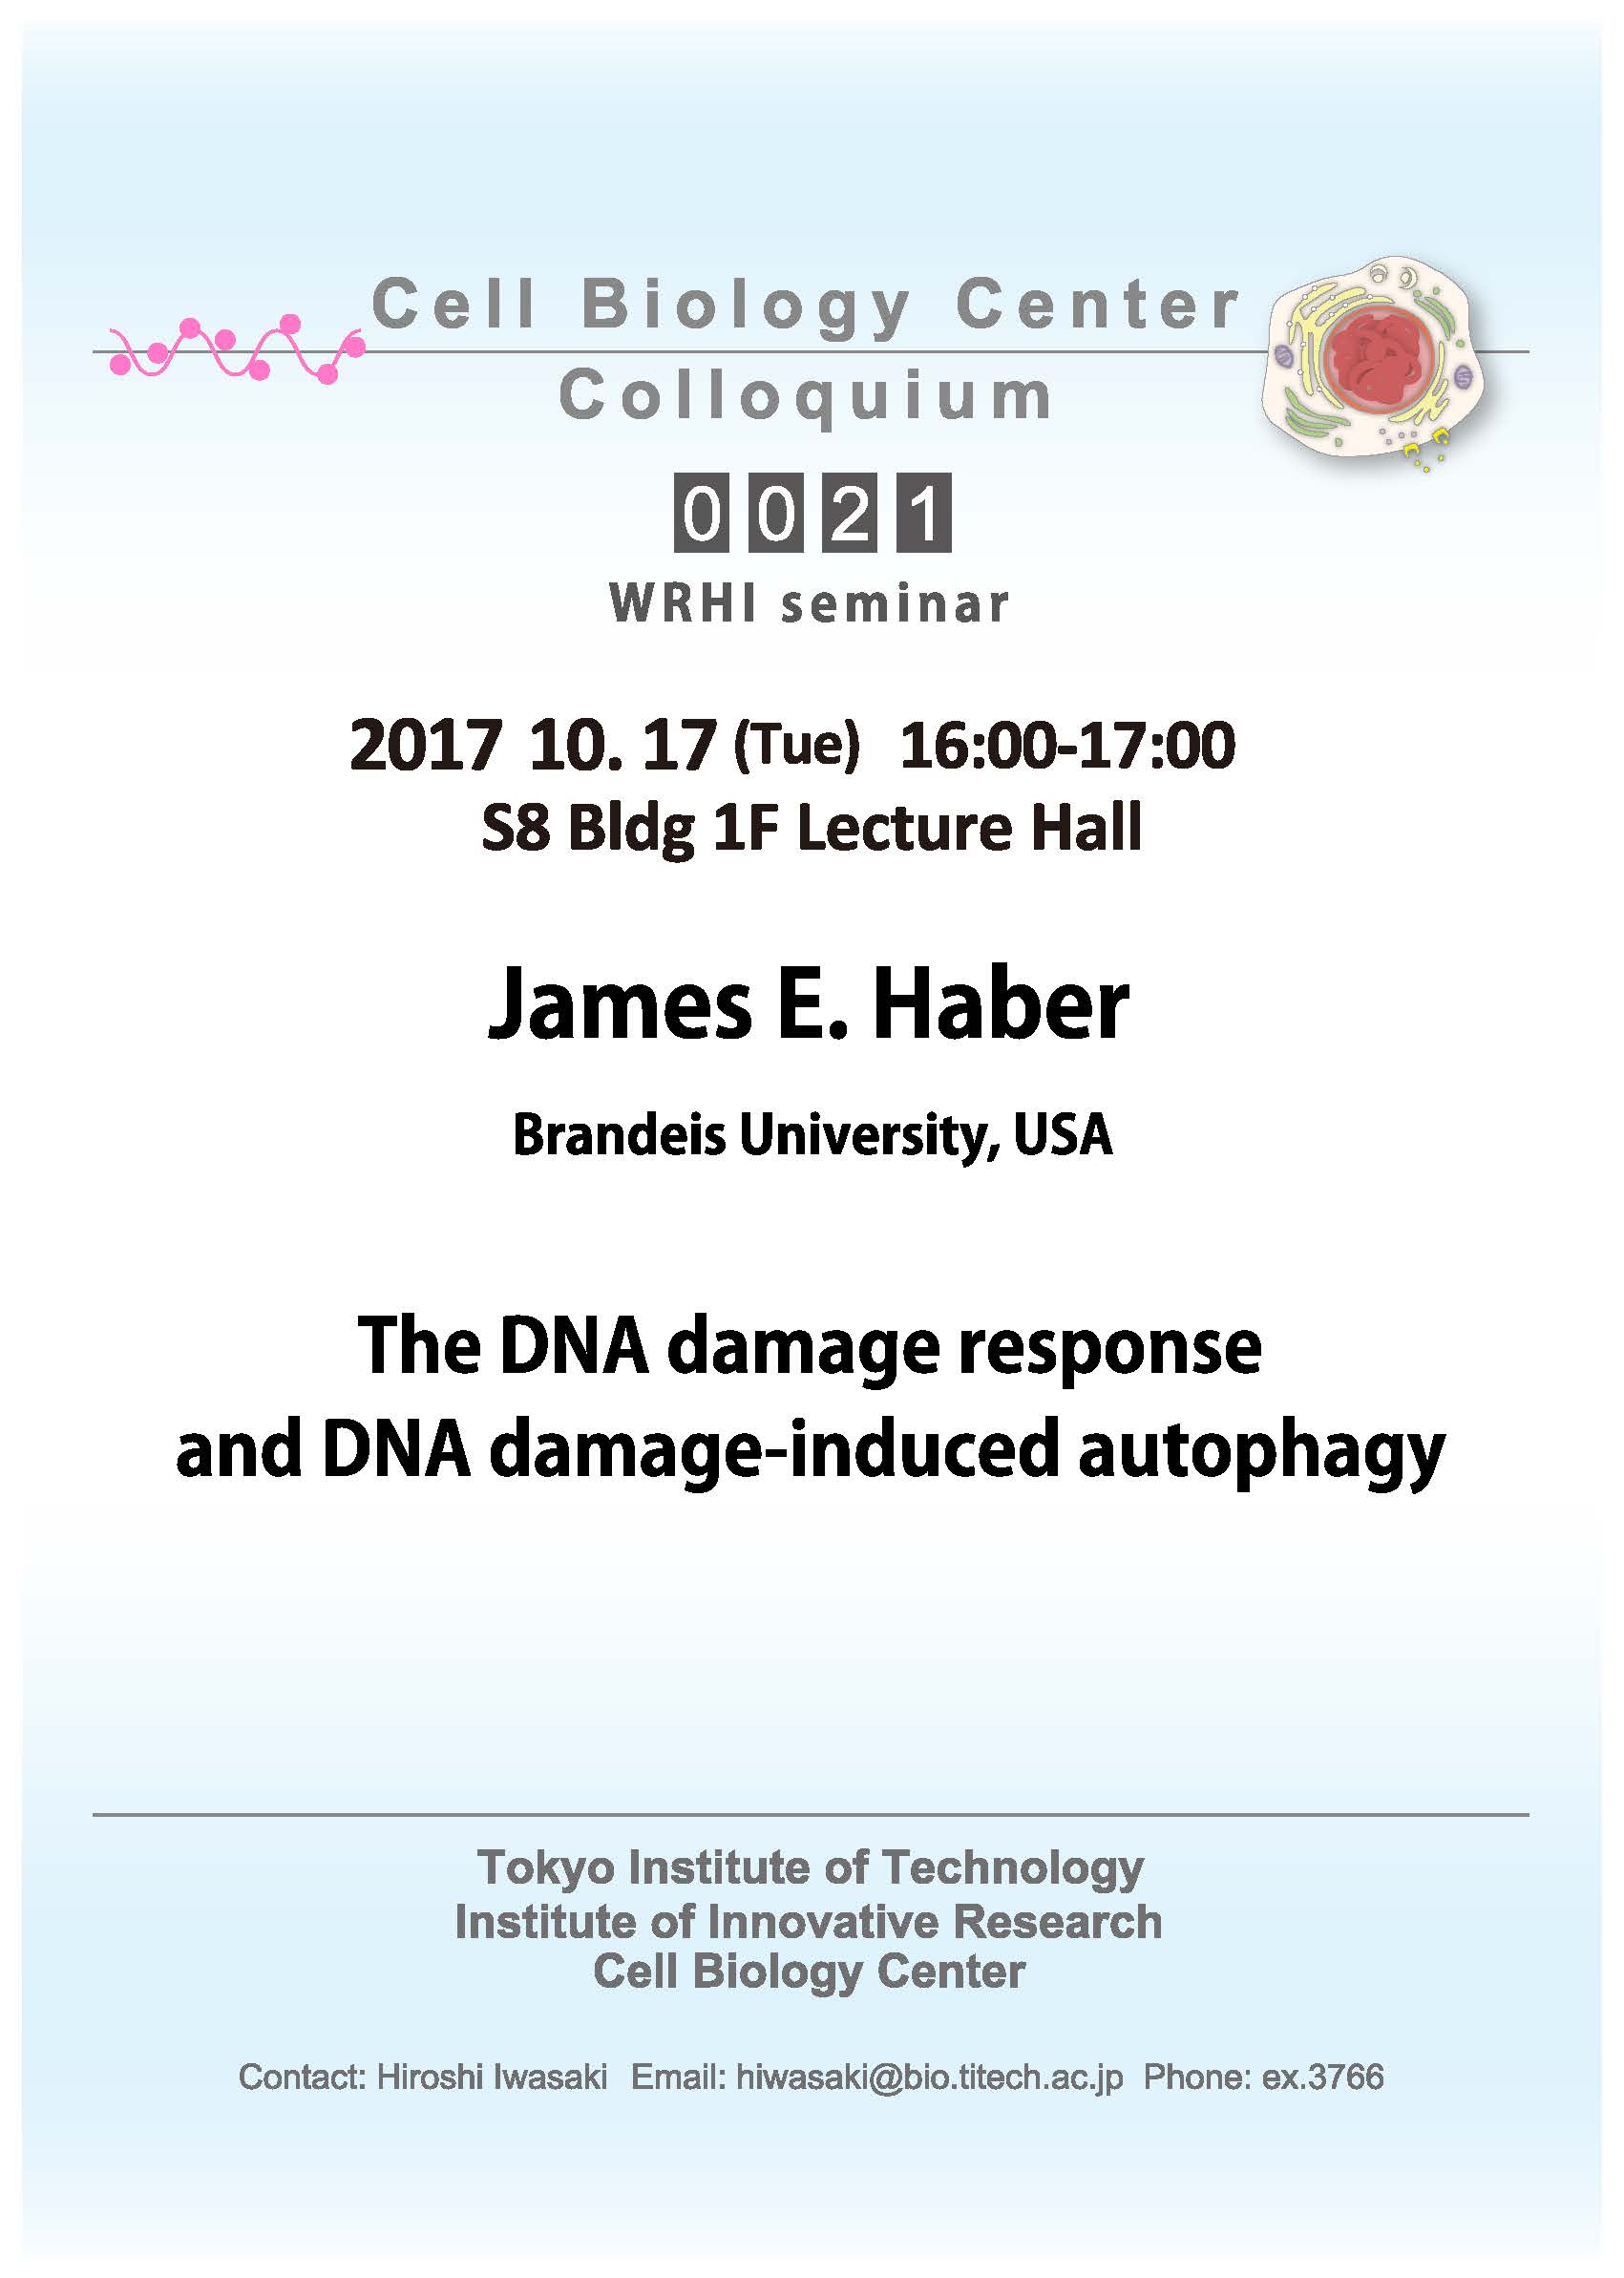 Cell Biology Center Colloquium 0021 flyer